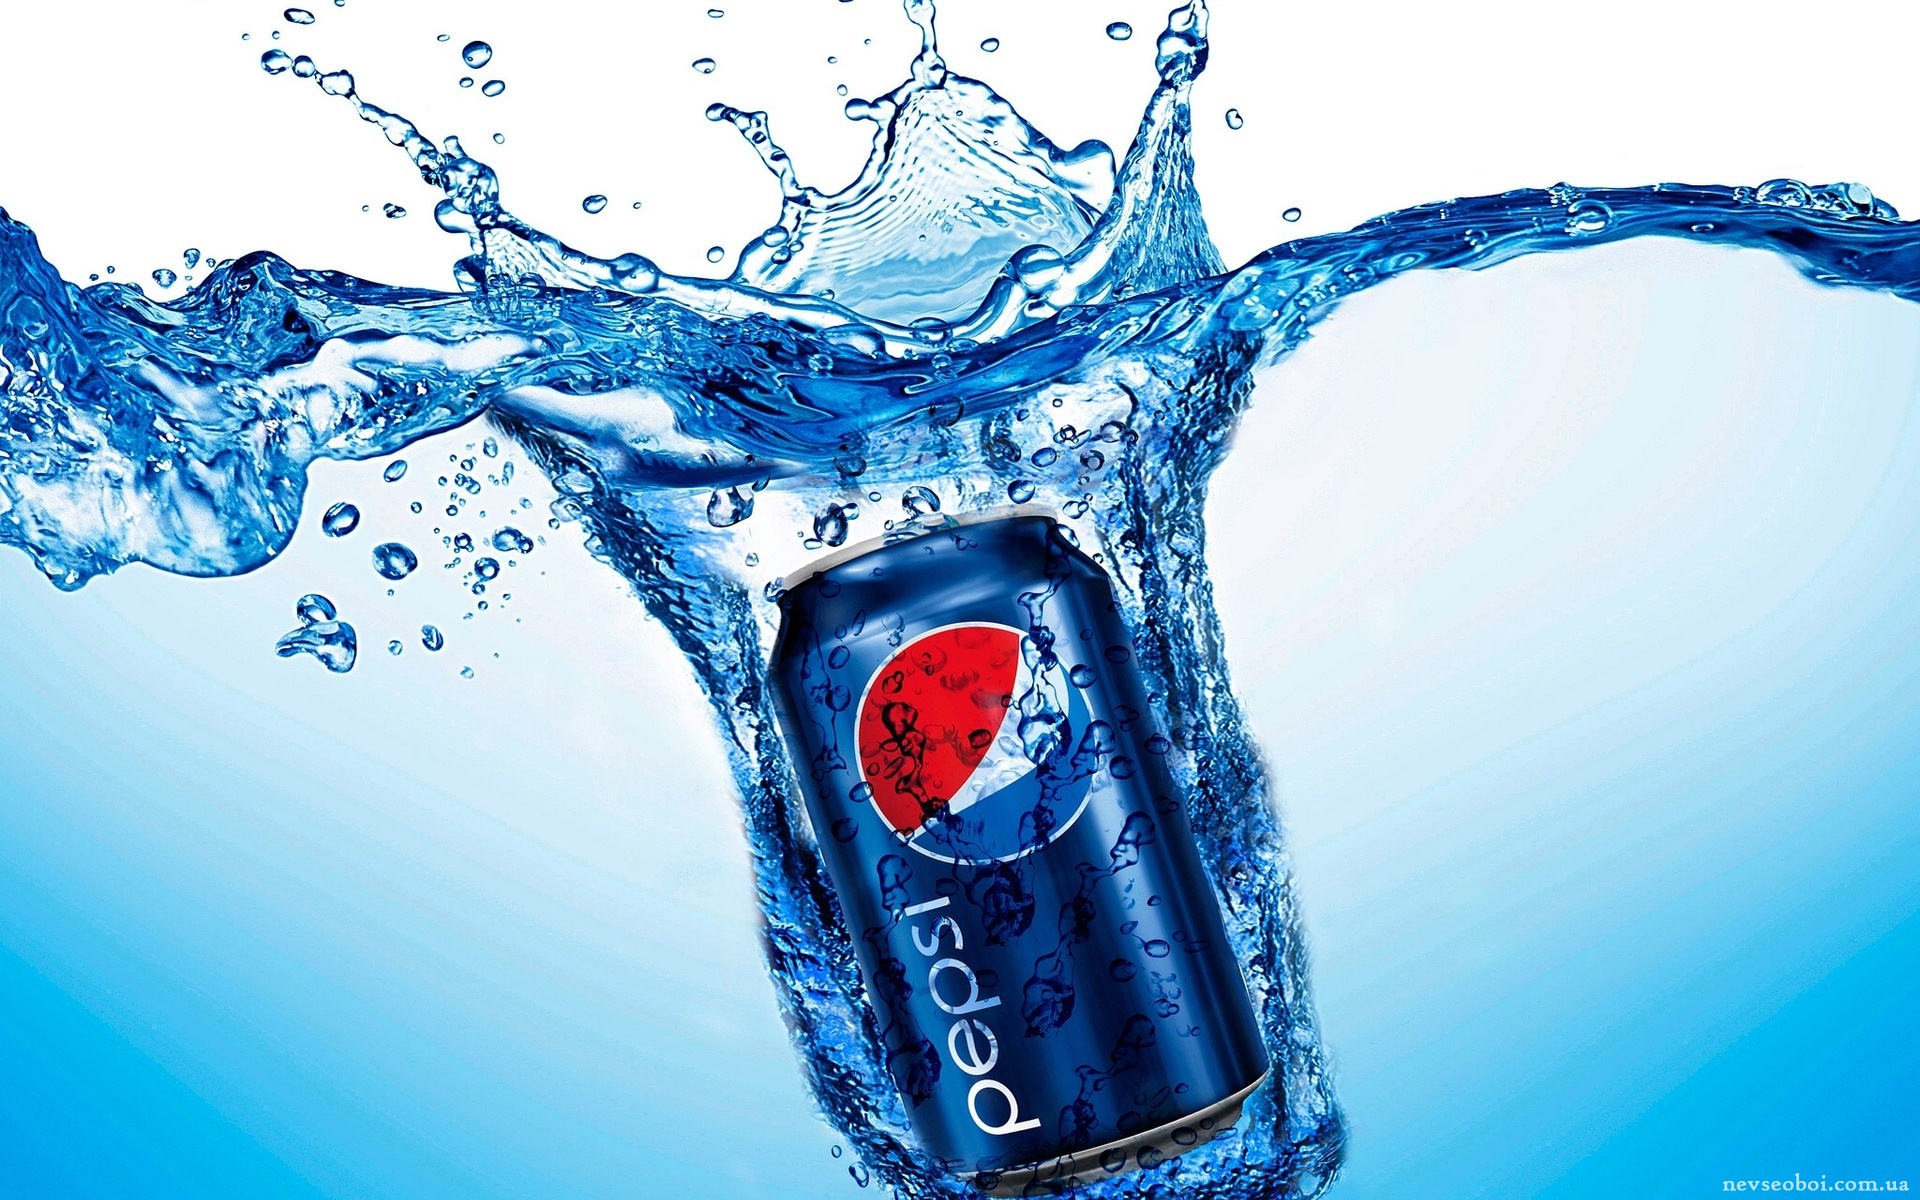 Финская компания по ошибке разлила пиво в банки Pepsi